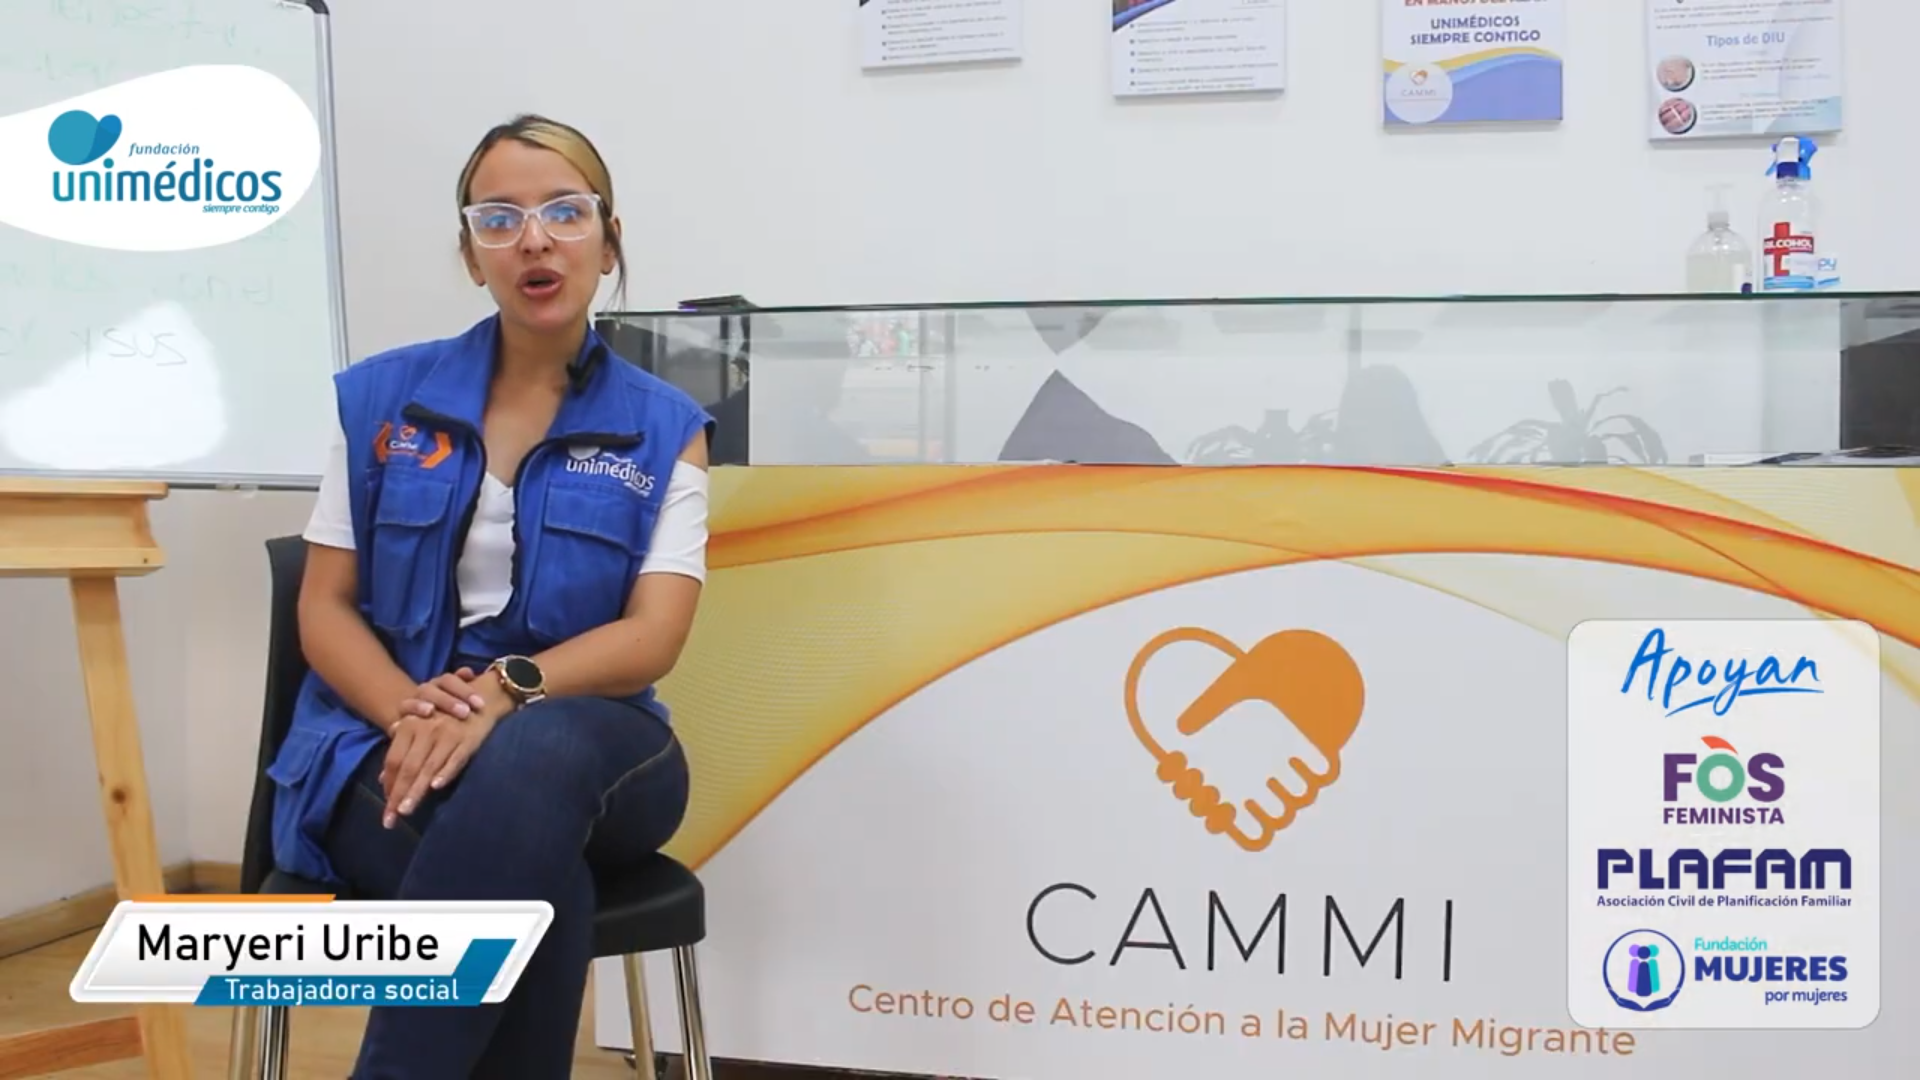 Centro de Atención a la Mujer Migrante (CAMMI) - Métodos anticonceptivos gratuitos.